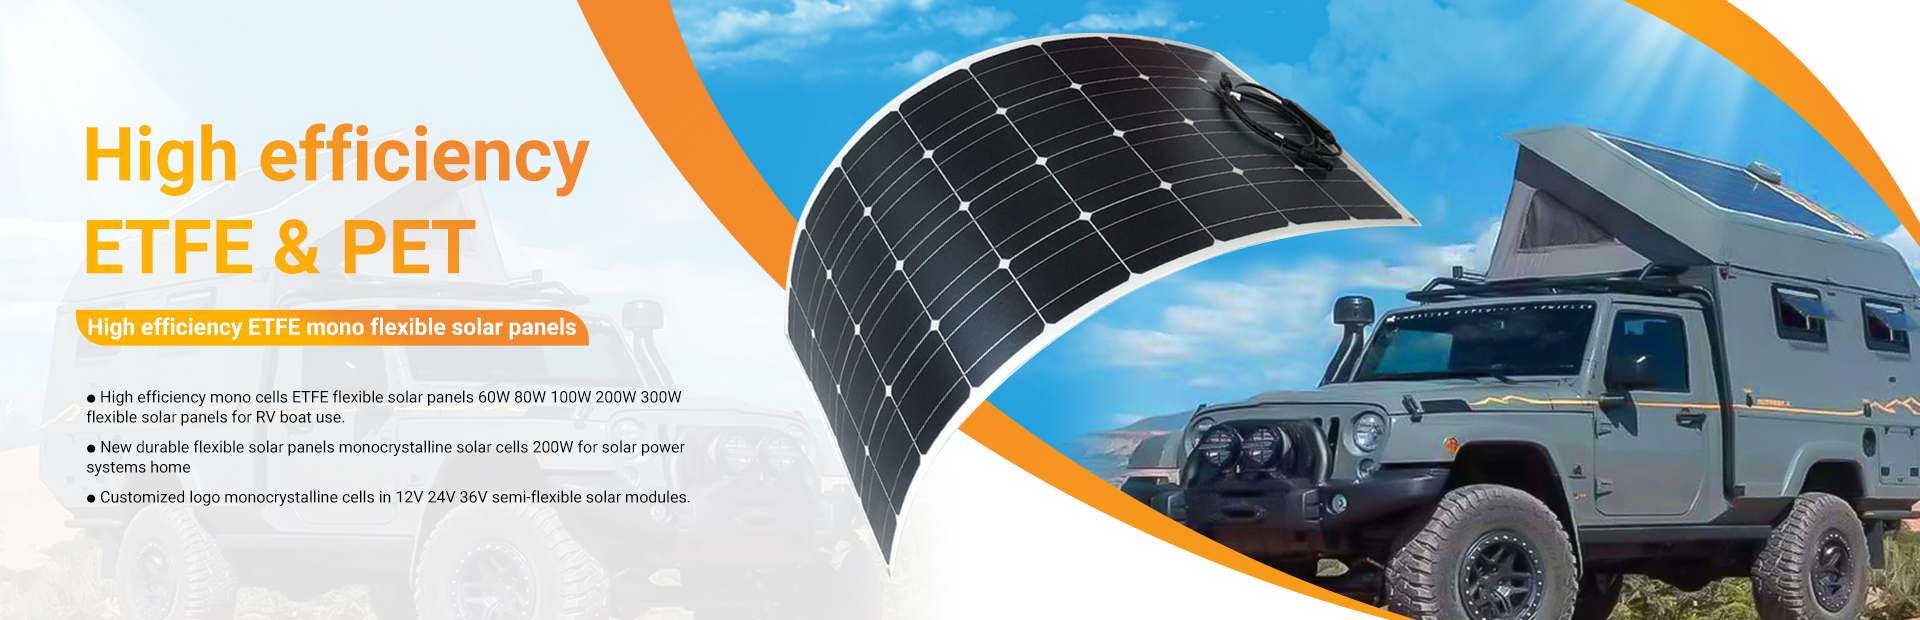 Inverter, Hybirid Inverter, Smart Grid - Song Solar